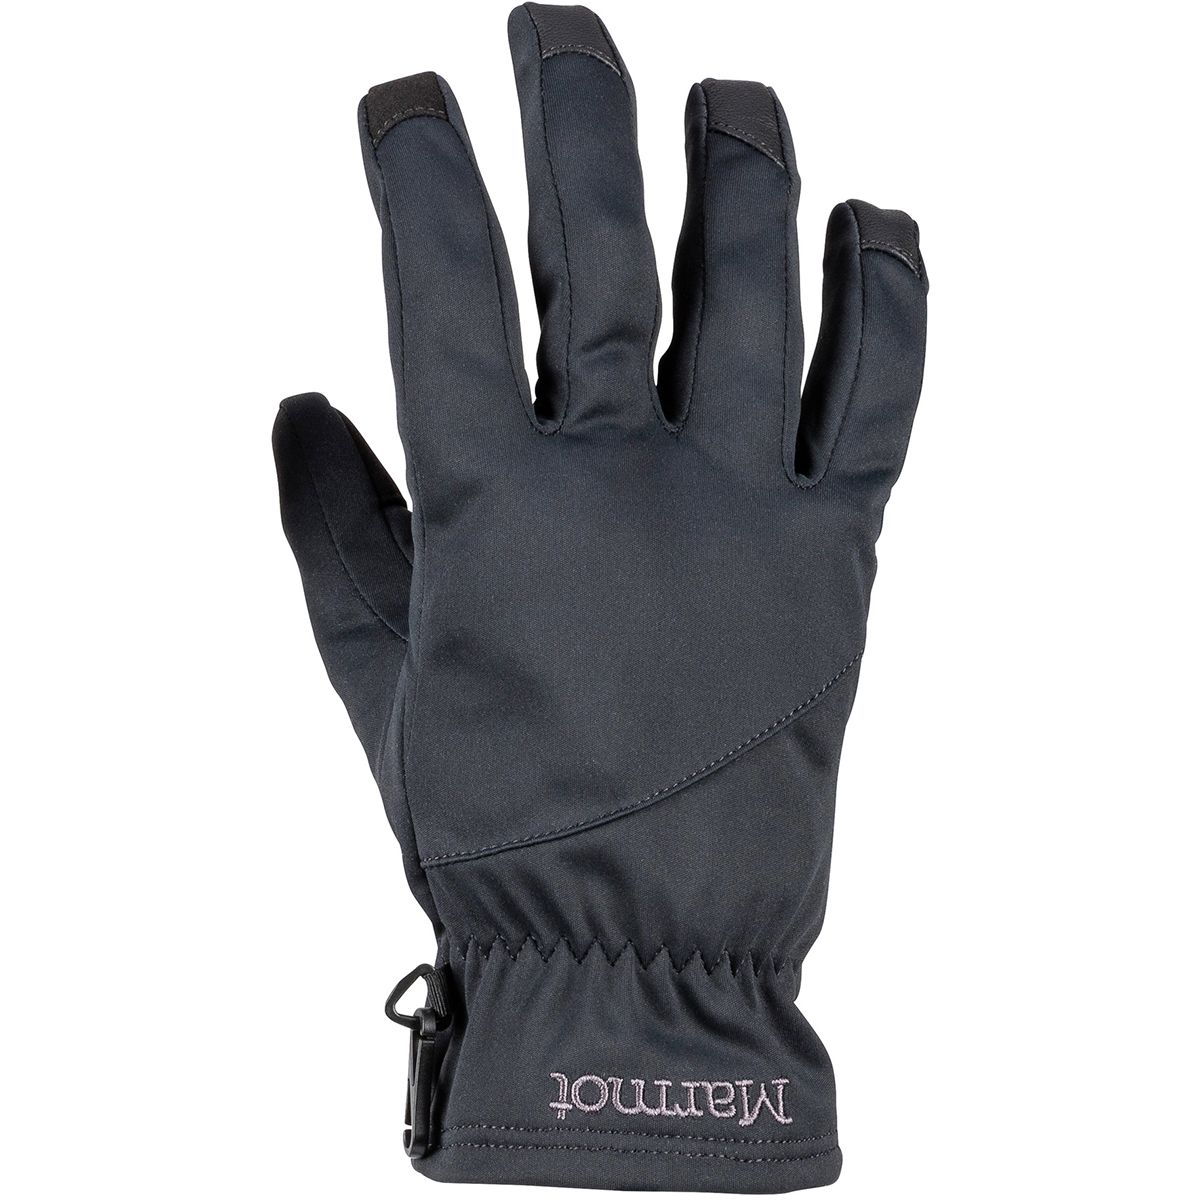 Перчатки connect. Перчатки Marmot. Marmot Glove Infinium Windstop Black. EDC перчатки. Перчатки Hugo Boss мужские.